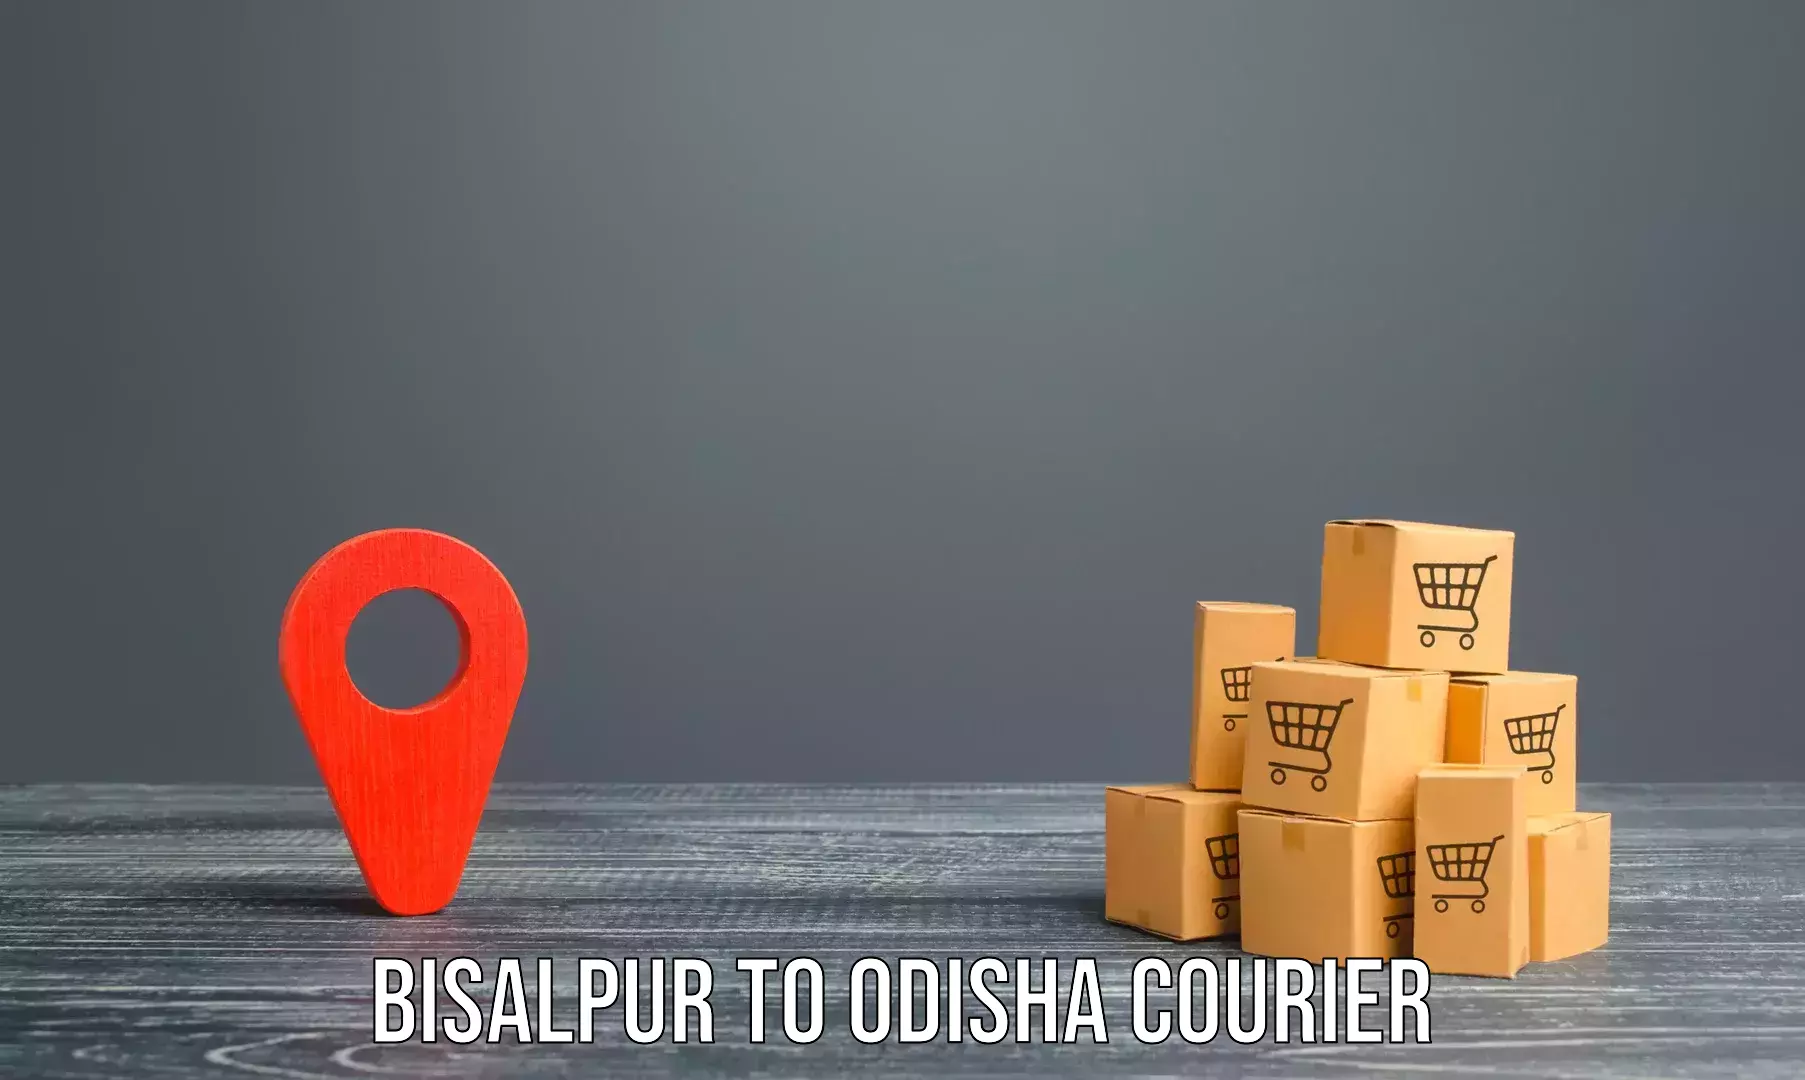 Furniture transport experts Bisalpur to Dhamara